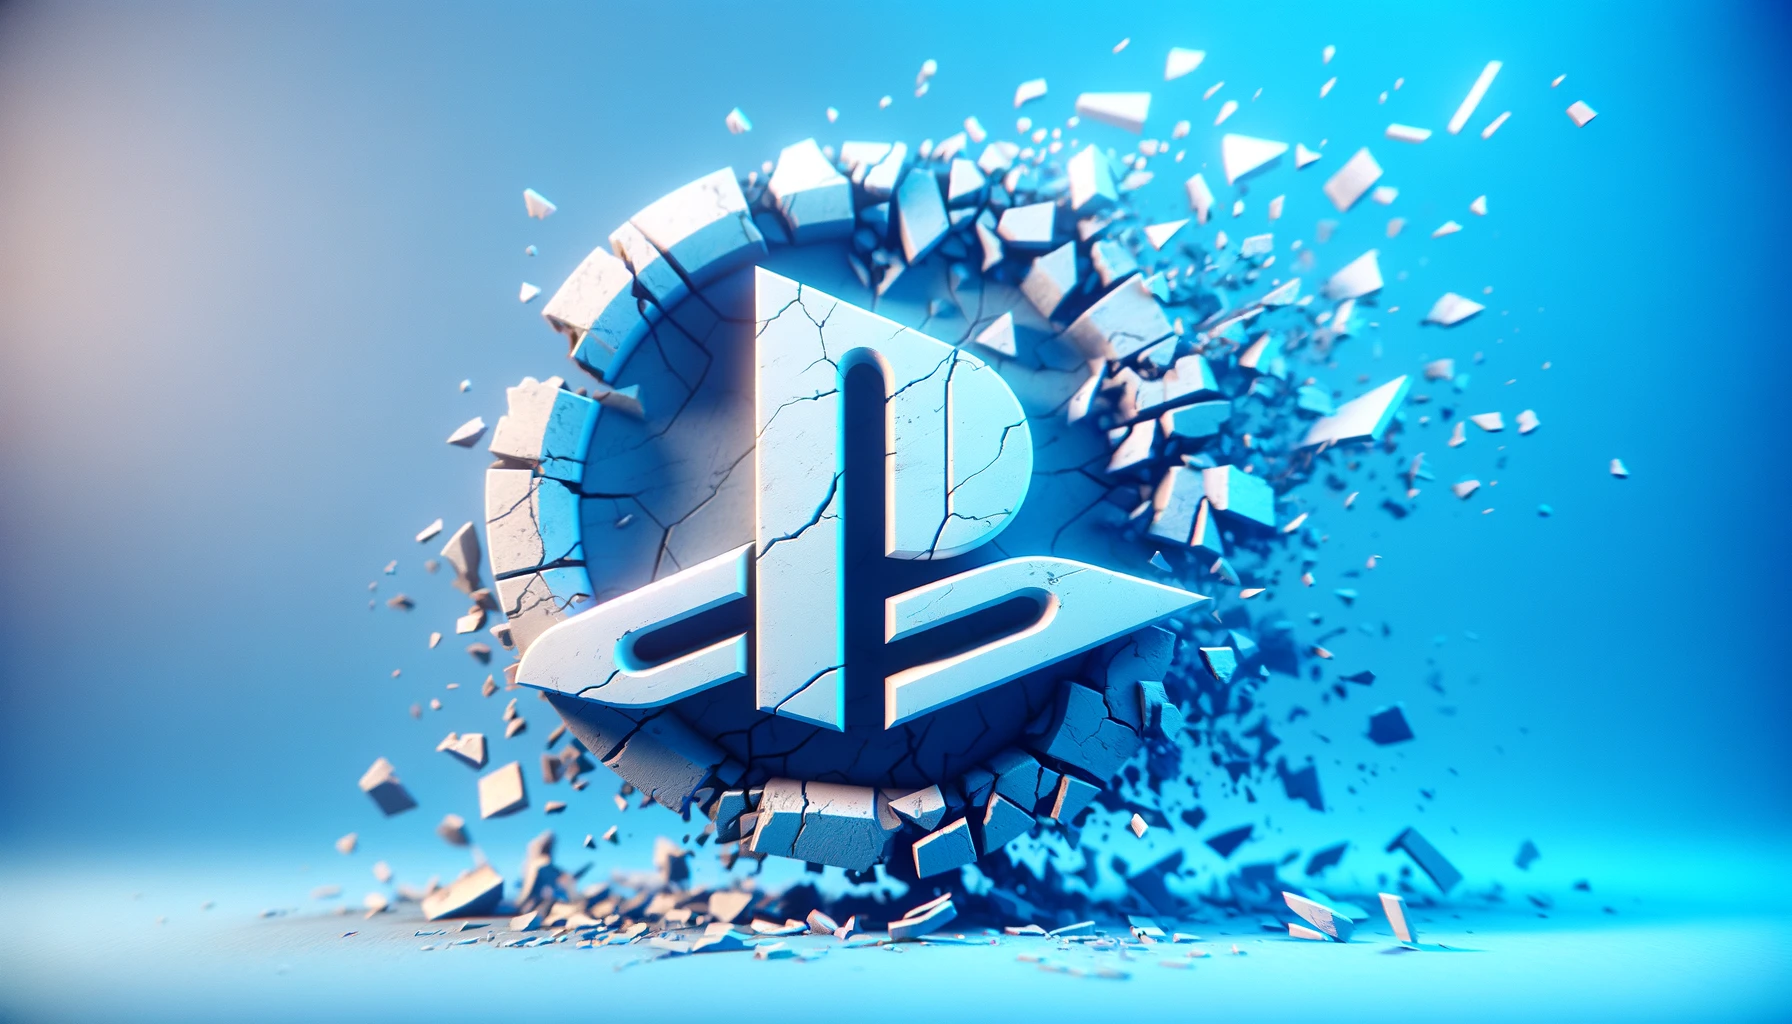 PlayStation могут закрыть: игровое подразделение Sony на грани банкротства